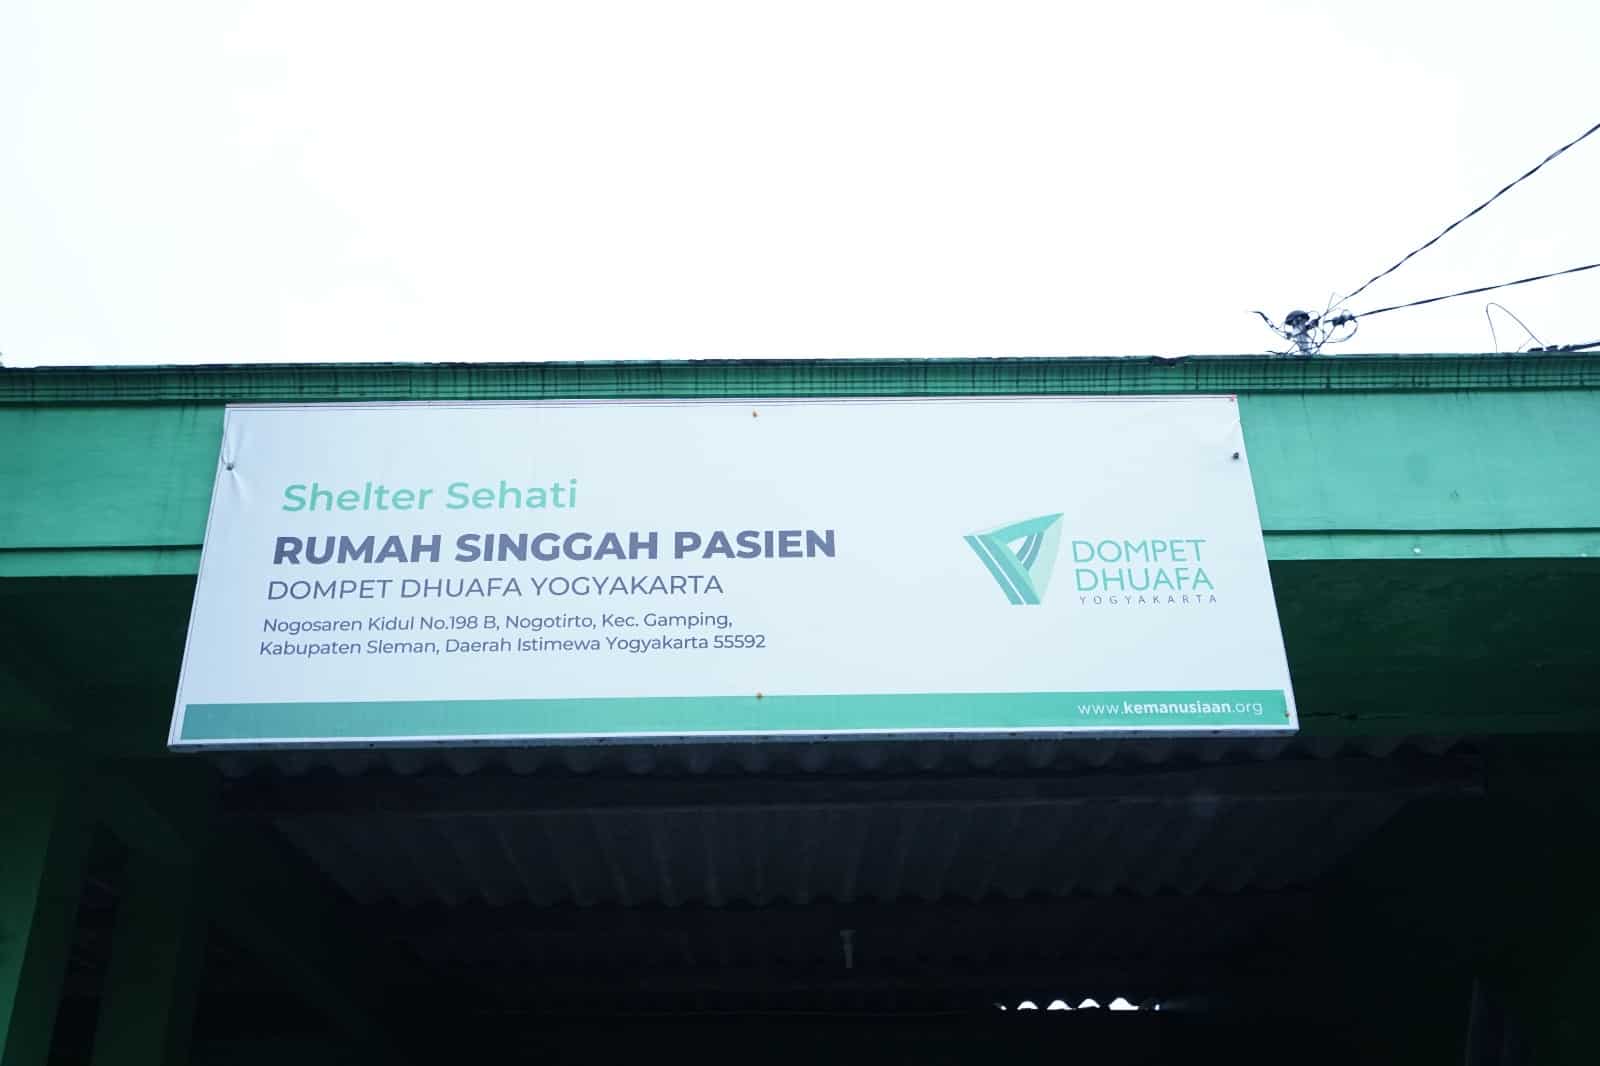 rumah singgah pasien shelter sehati Dompet Dhuafa Yogyakarta